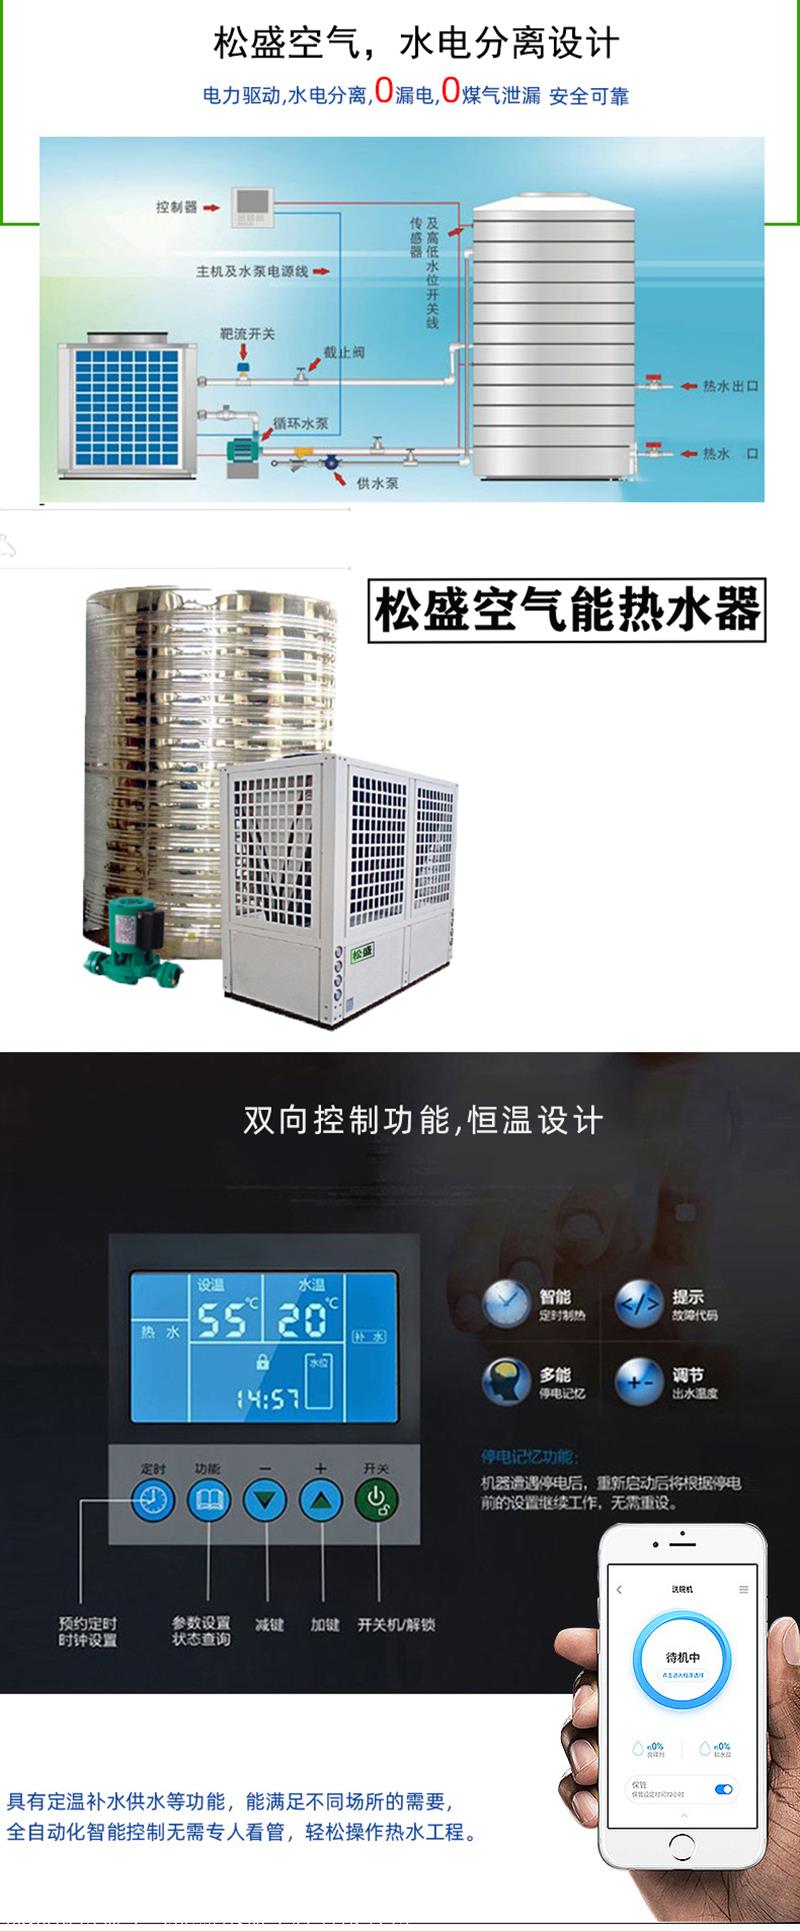 深圳招商商用空气能热泵热水器一体机